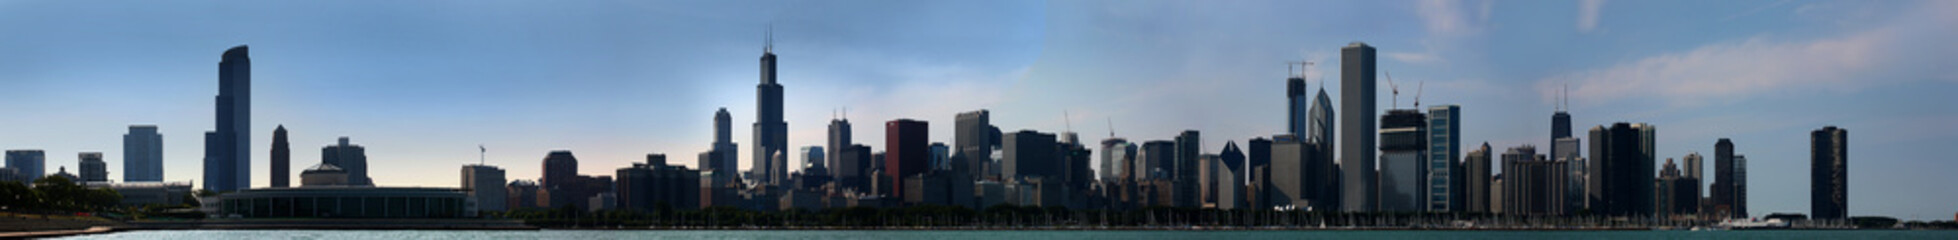 Fototapeta na wymiar Chicago miasta w dzień z przystani i centrum miasta